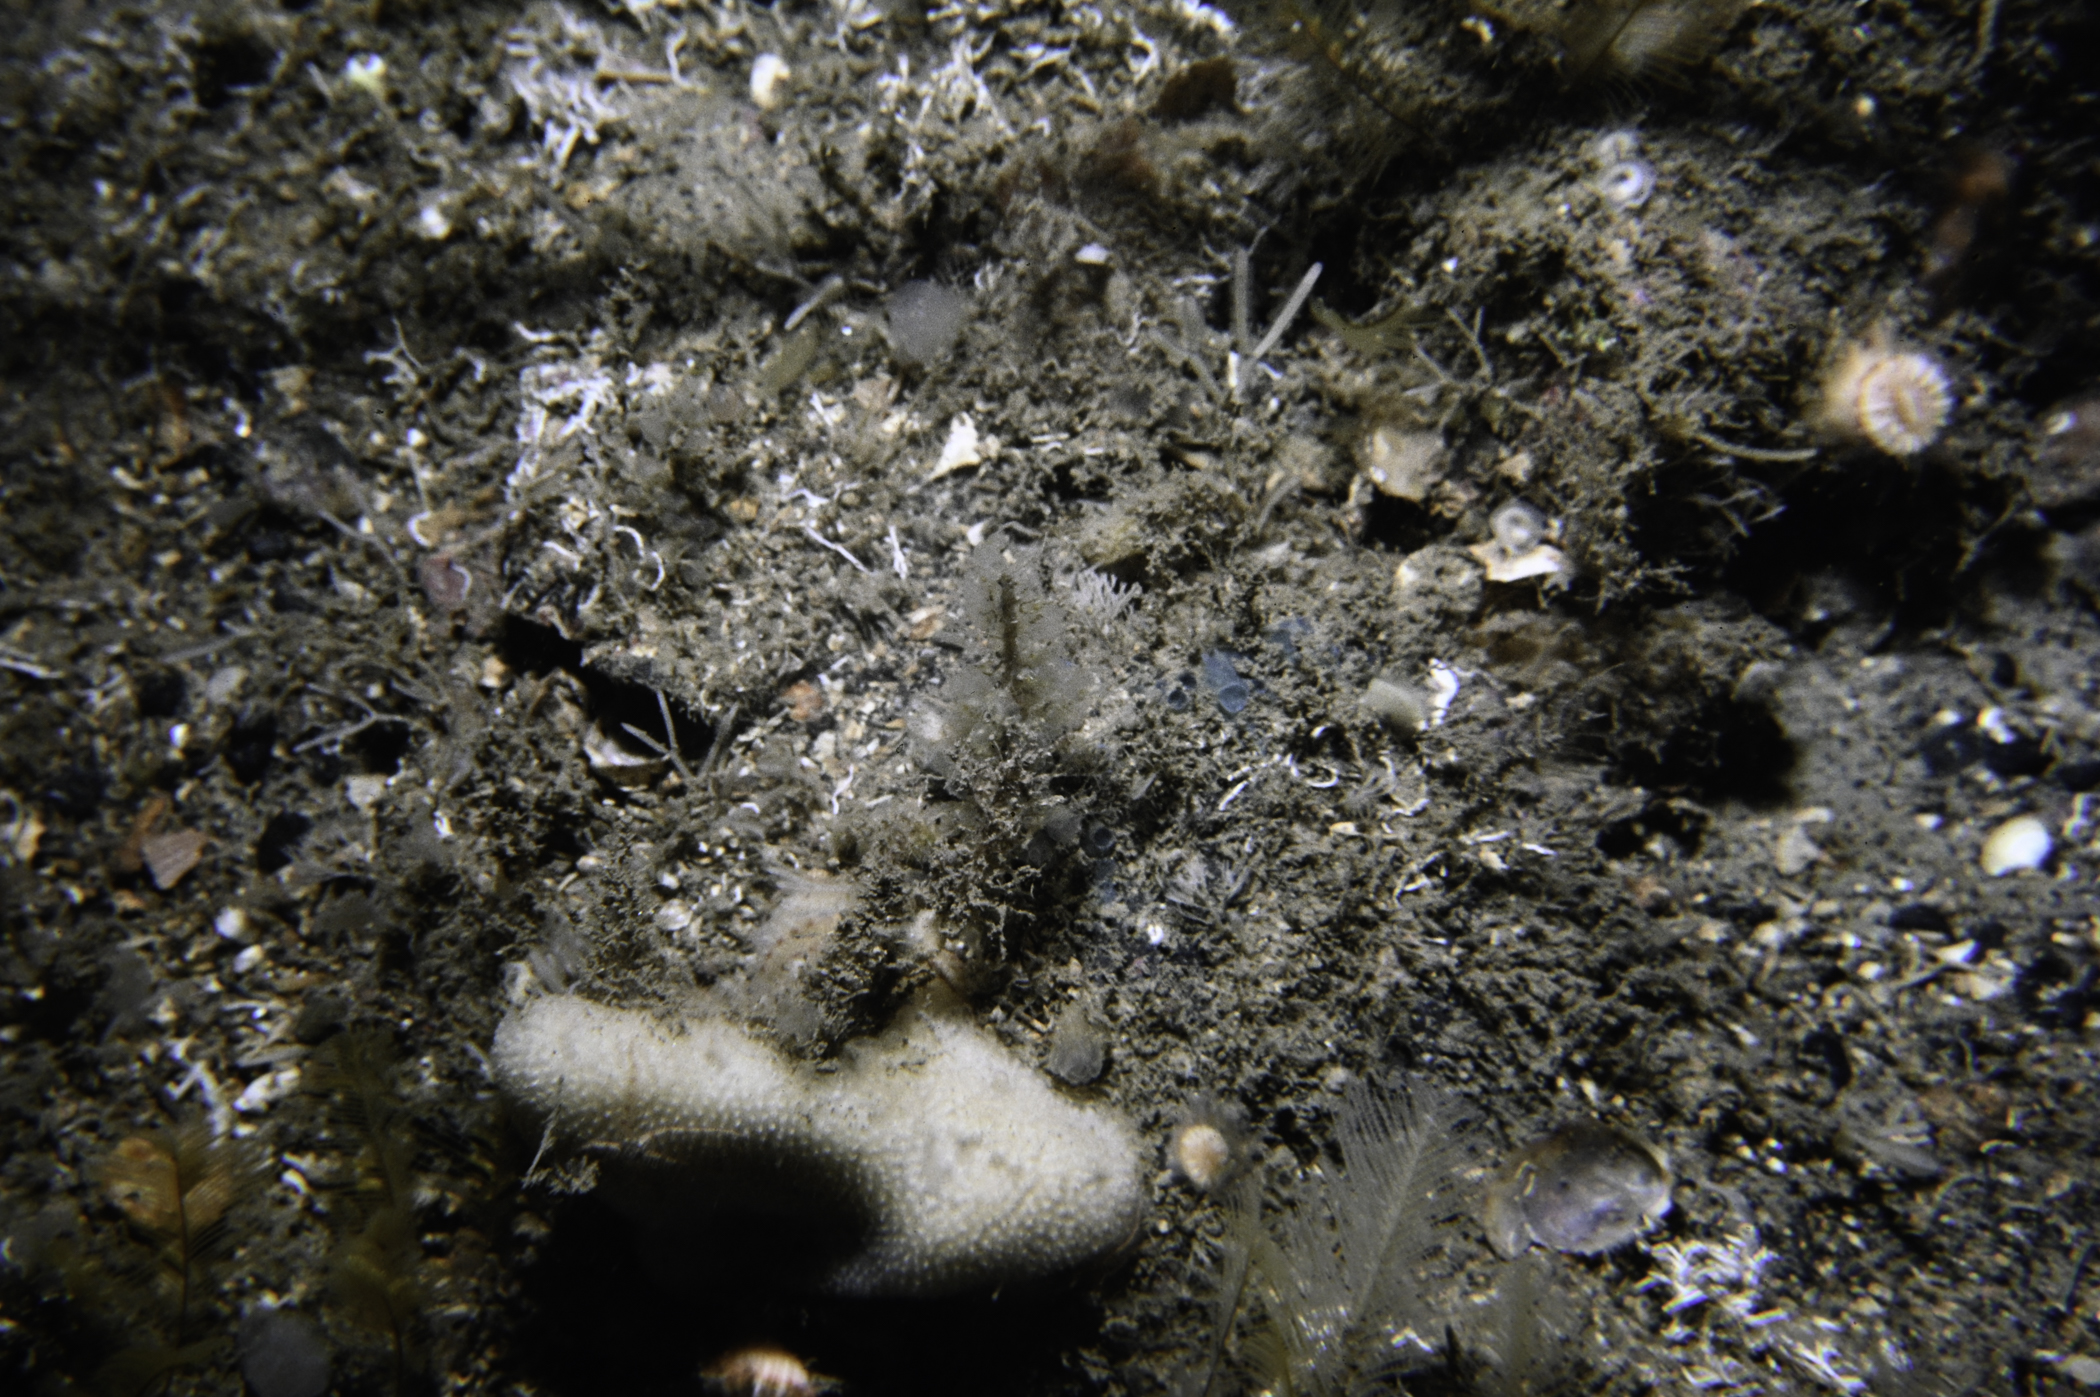 Hymedesmia paupertas, Dysidea fragilis. Site: East Coast, Rathlin Island. 